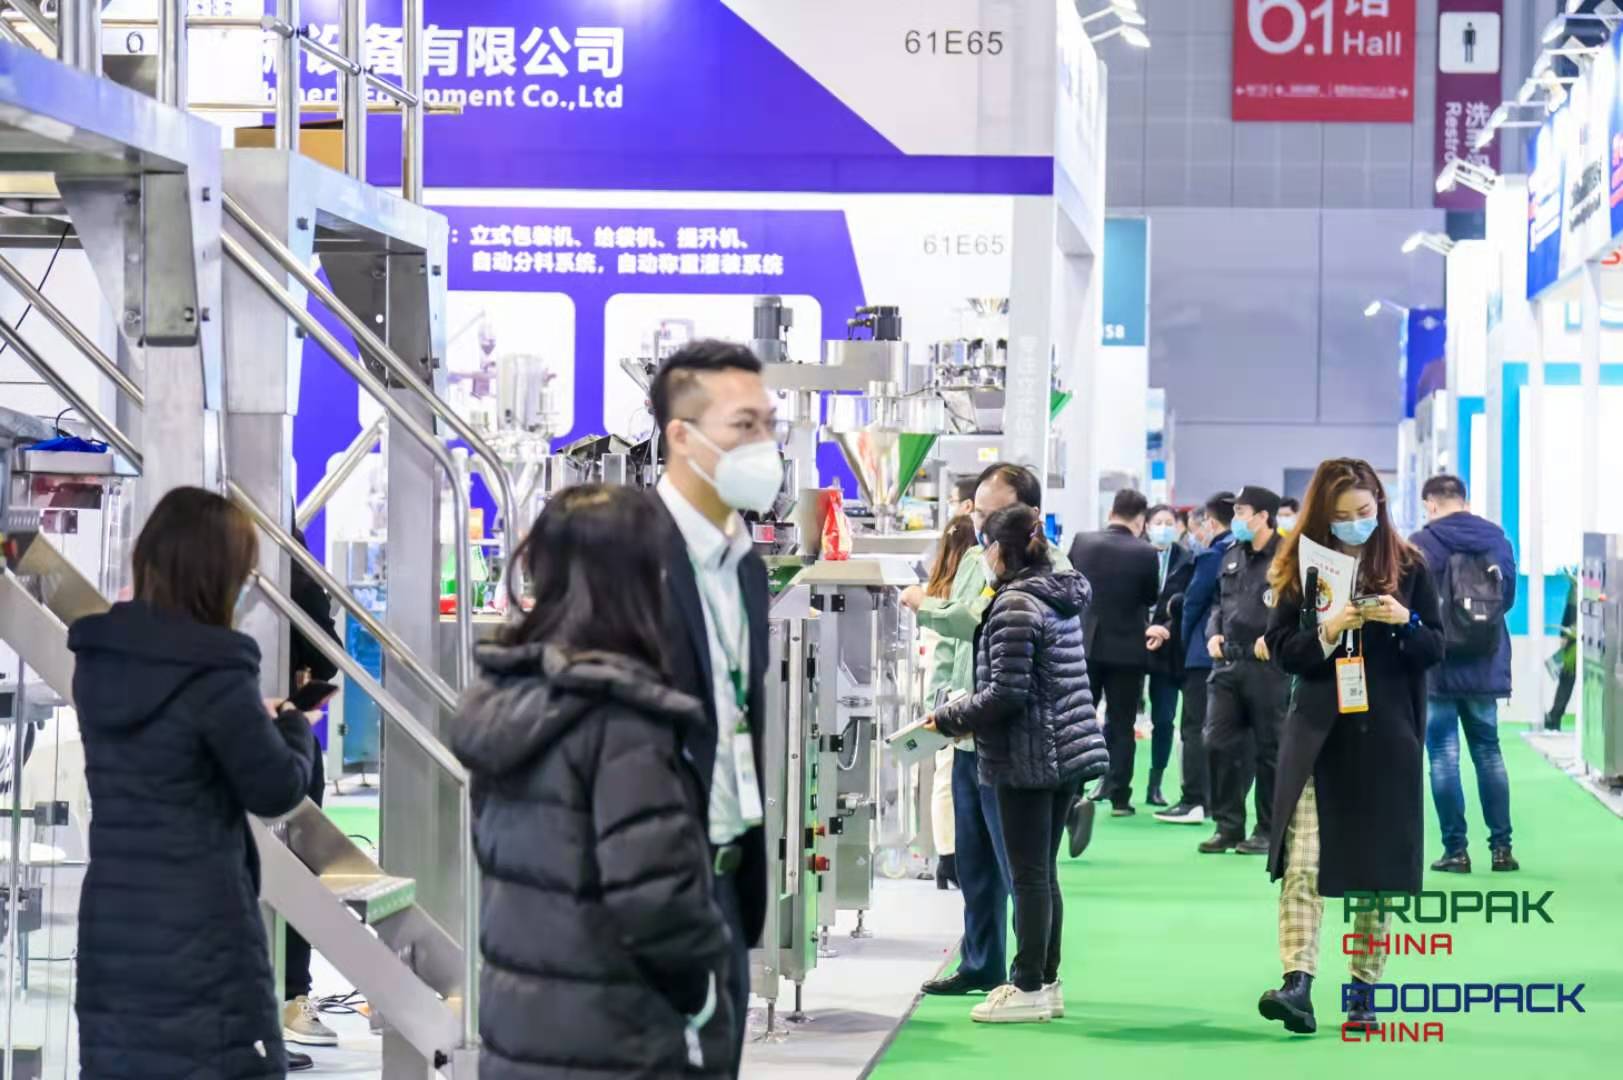 上海国际加工包装展（ProPak China 2021）上海国际食品加工与包装机械展（FoodPack China 2021）